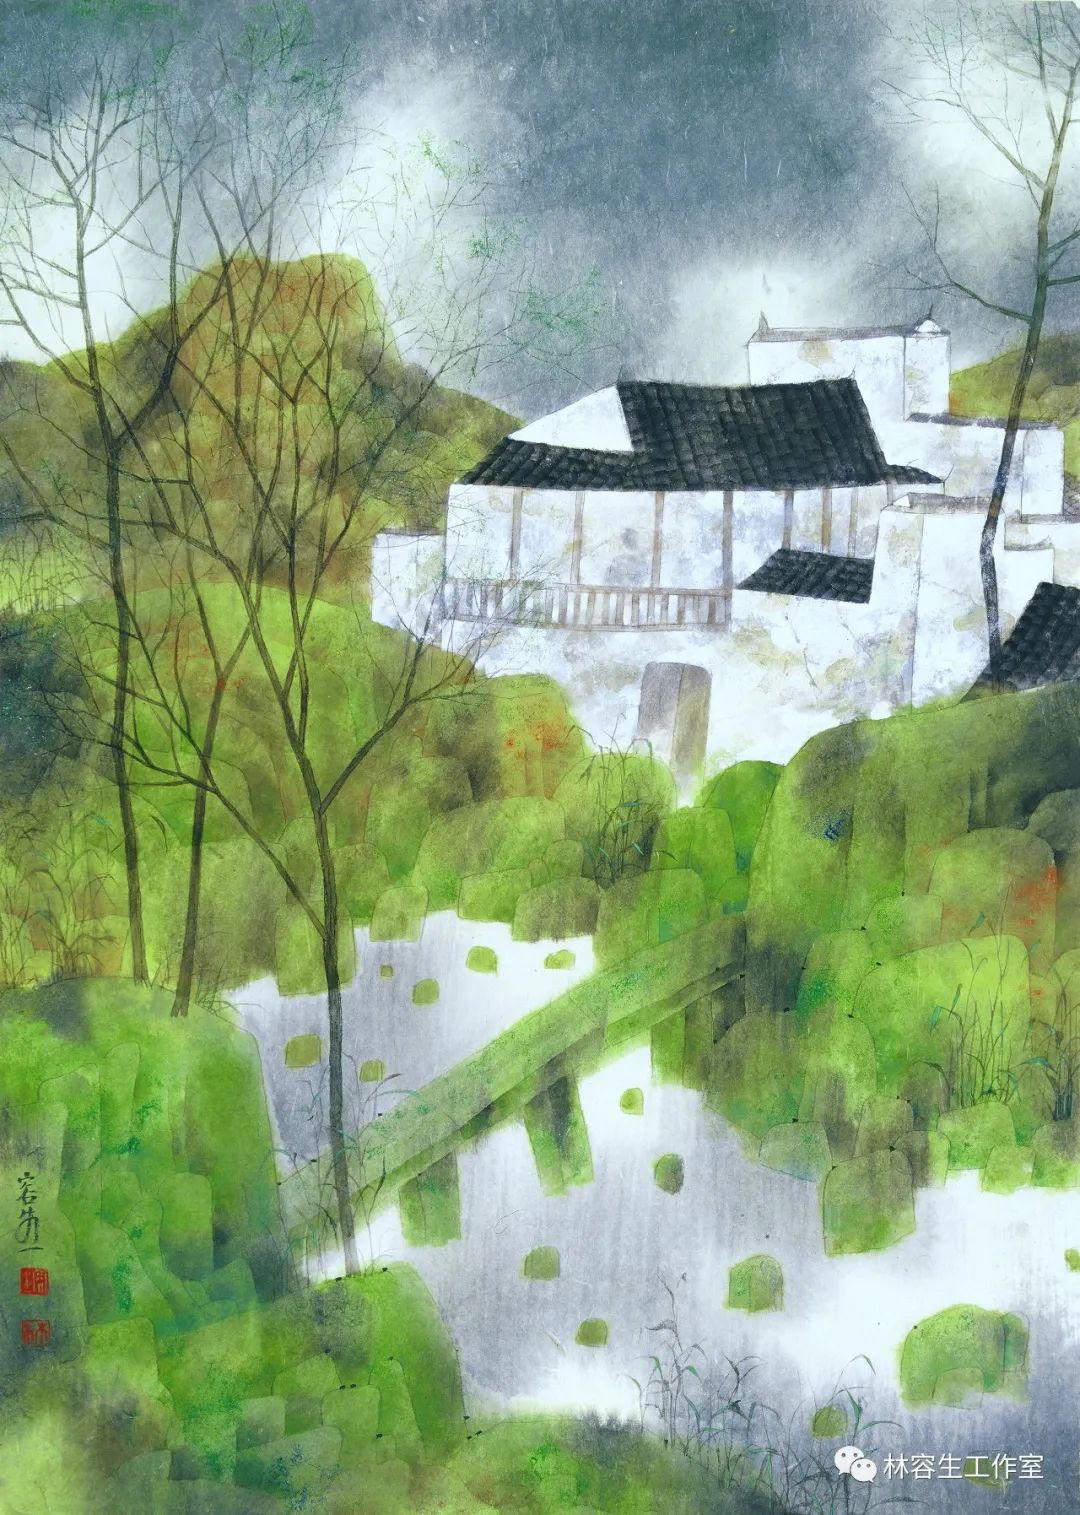 著名画家林容生：“因心造境”是中国山水文化的根本法则